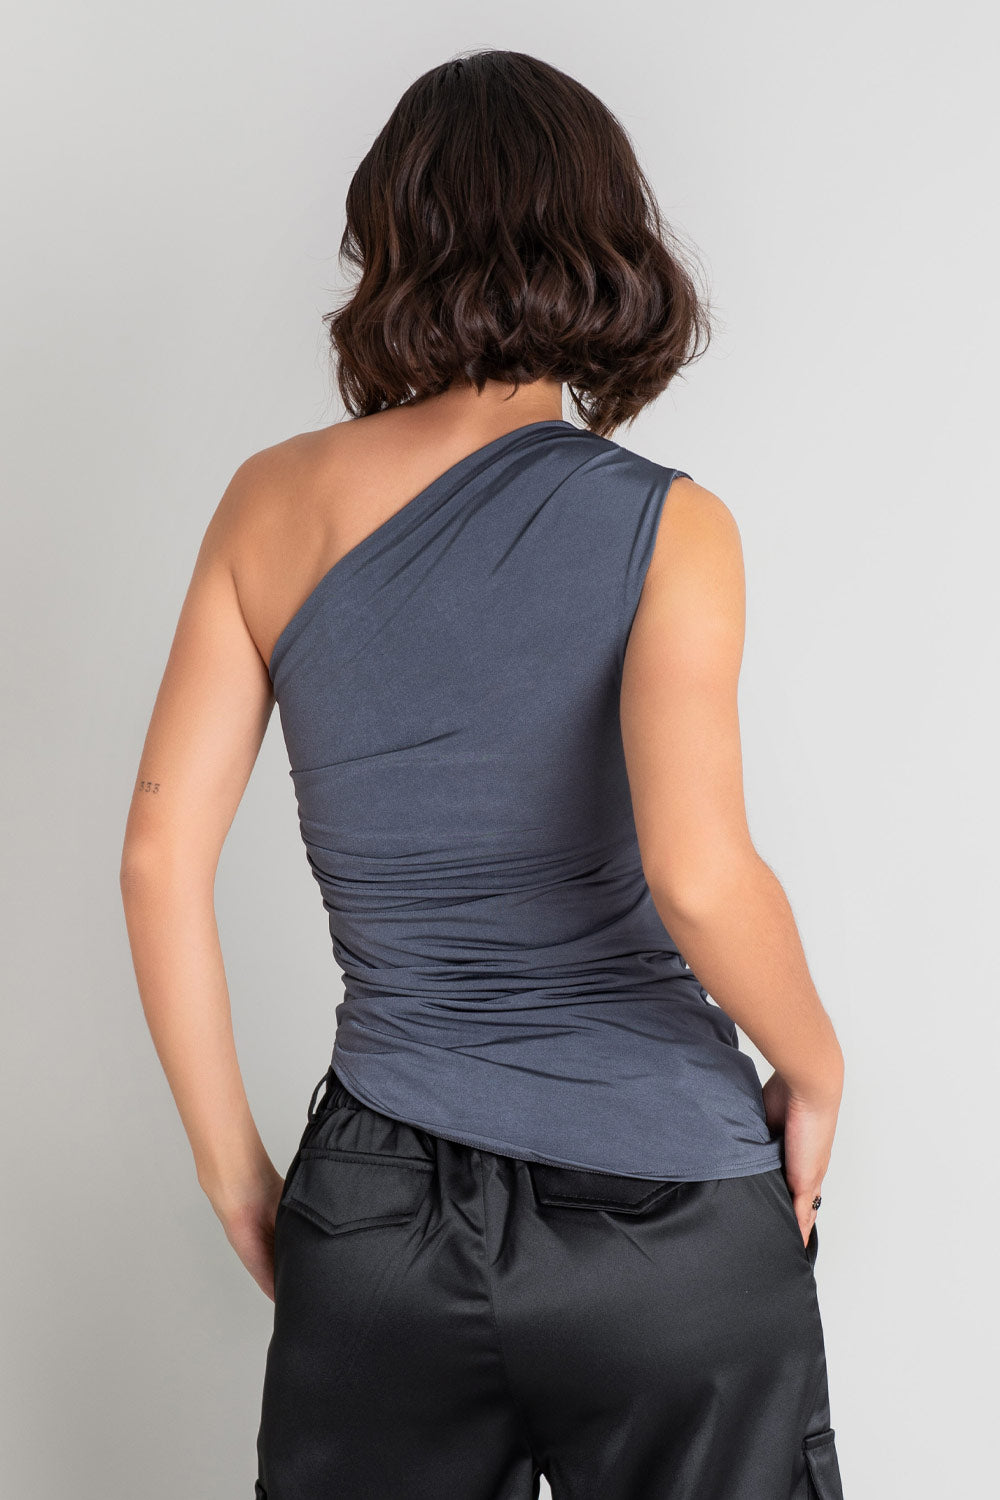 Top asimétrico de fit ajustado, sin mangas, plisados en un hombro y costados, escote diagonal y bajo curveado asimétrico.